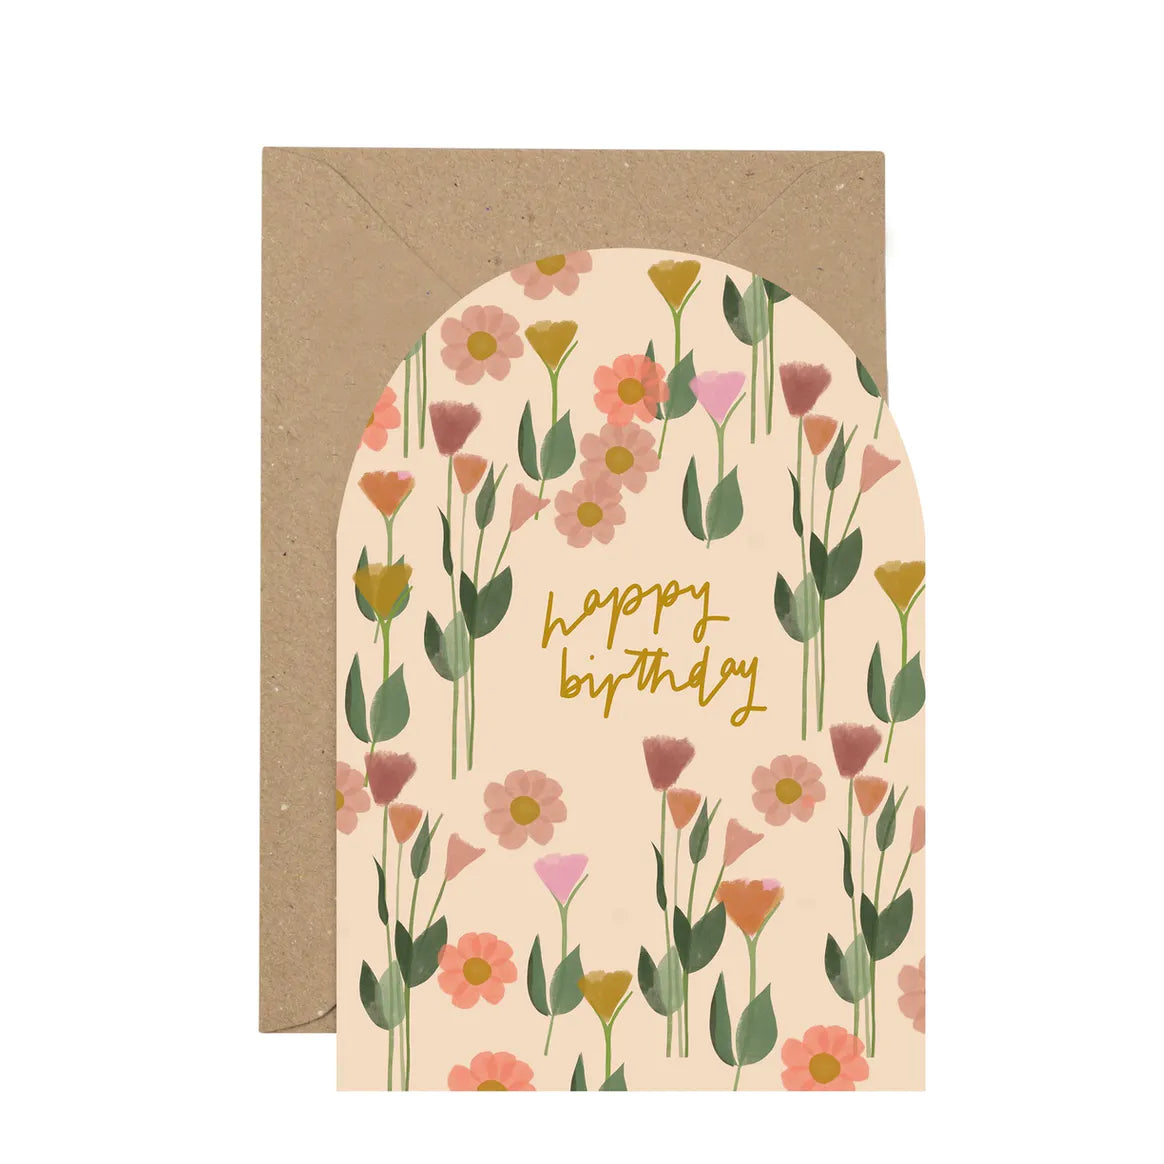 Floral Happy Birthday Card By Plewsy